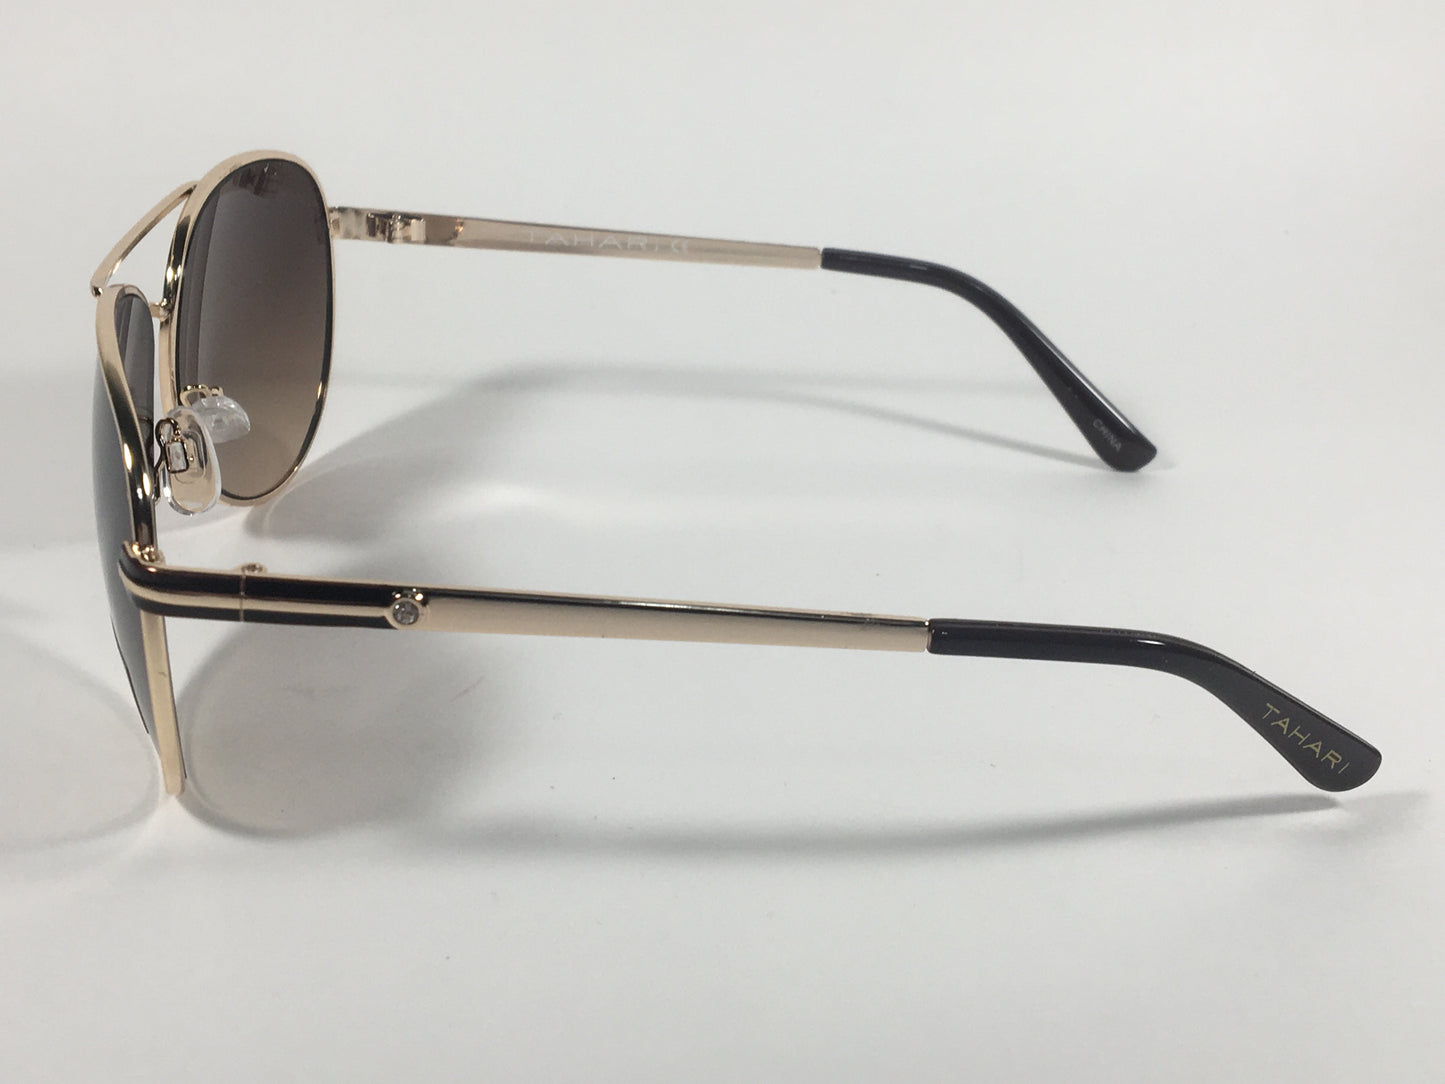 Tahari Aviator Sunglasses Brown And Gold Metal Brown Gradient Lens TH752 GLDBN - Sunglasses